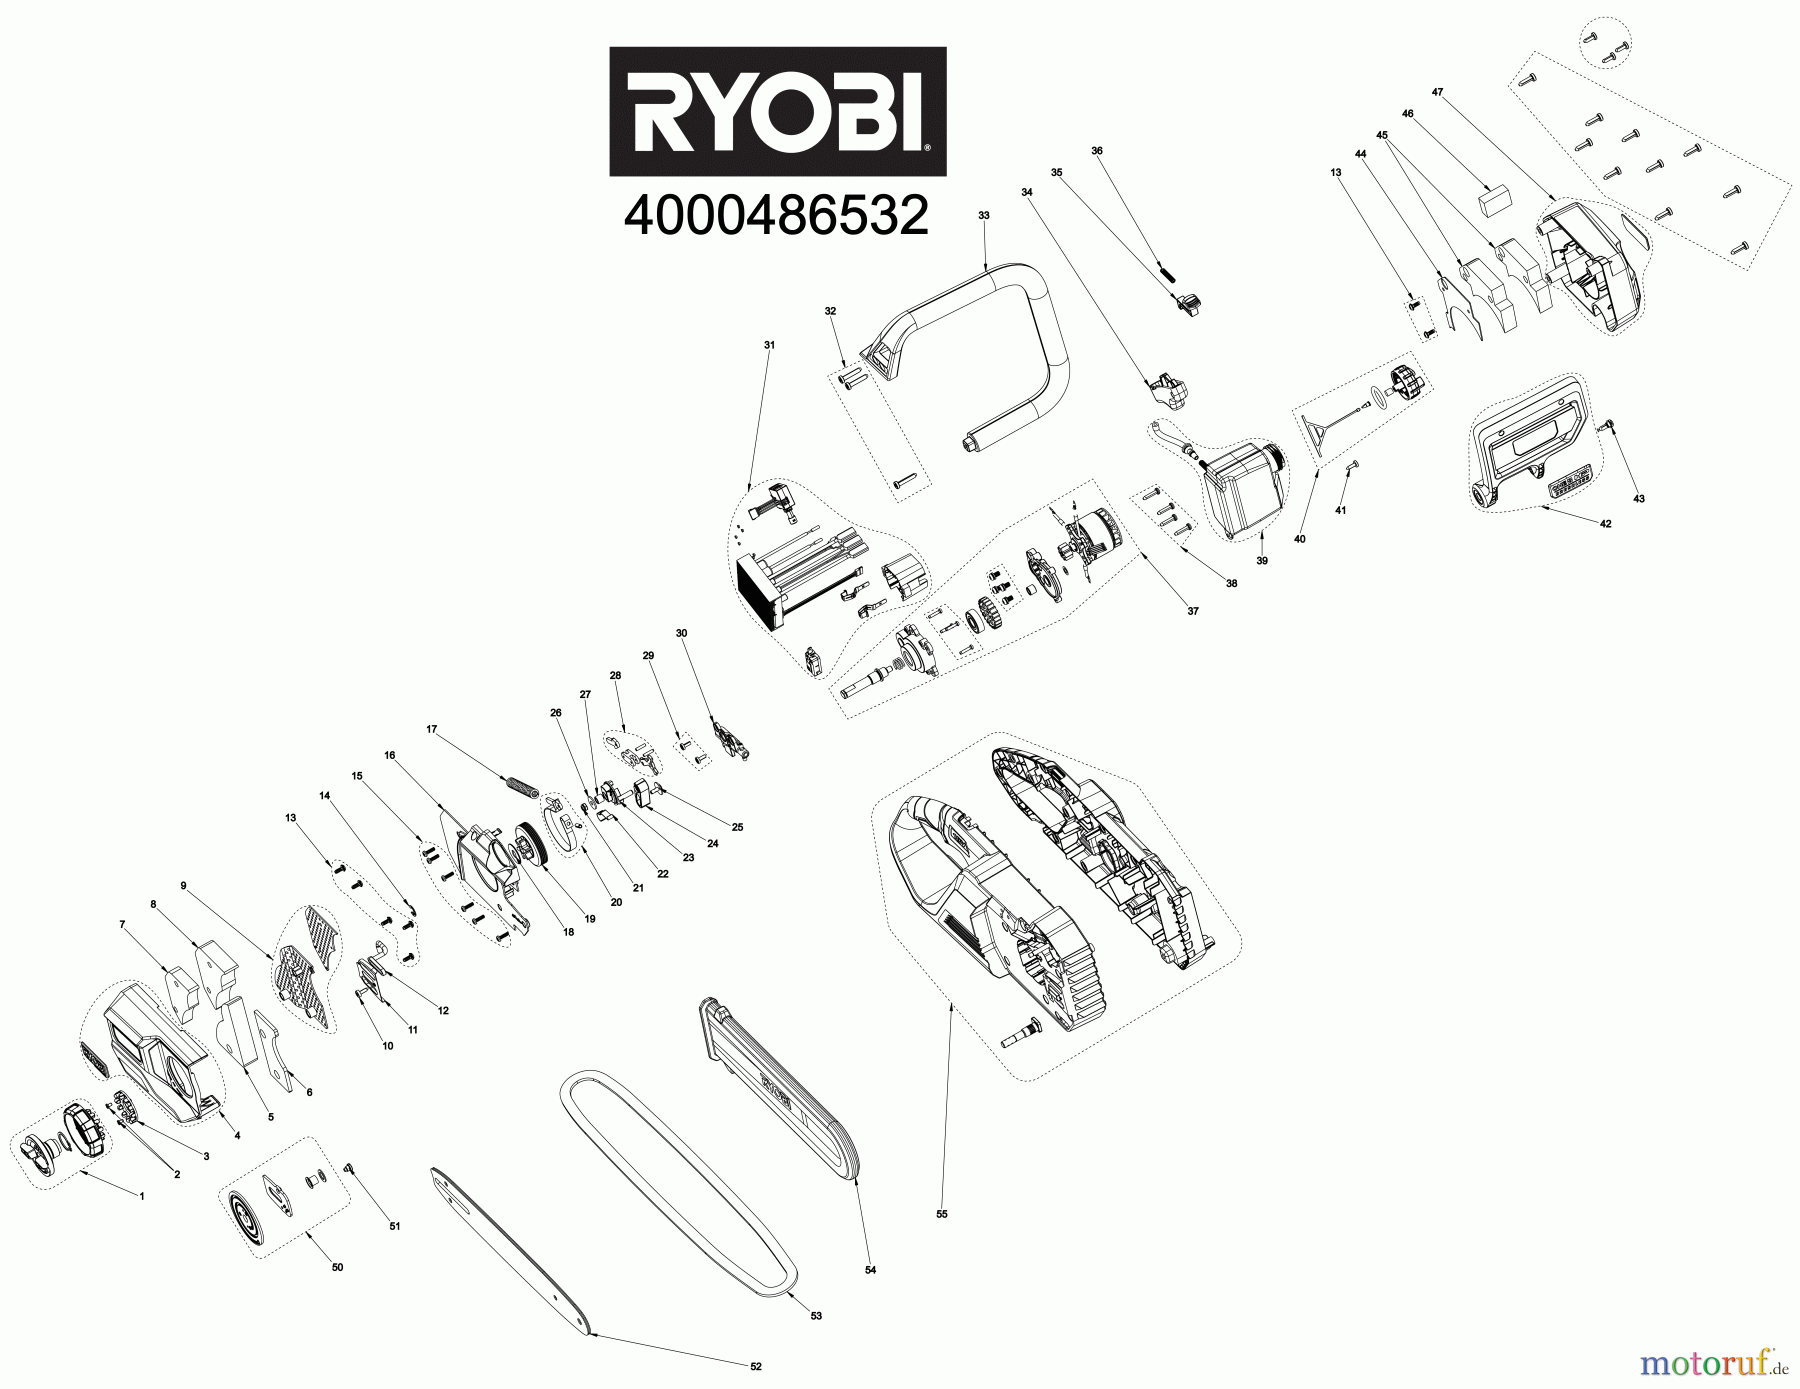  Ryobi Kettensägen Akku RY18CSX30A 18 V ONE+ HP Whisper™ Brushless Akku-Kettensäge, Schwertlänge 30 cm Seite 1